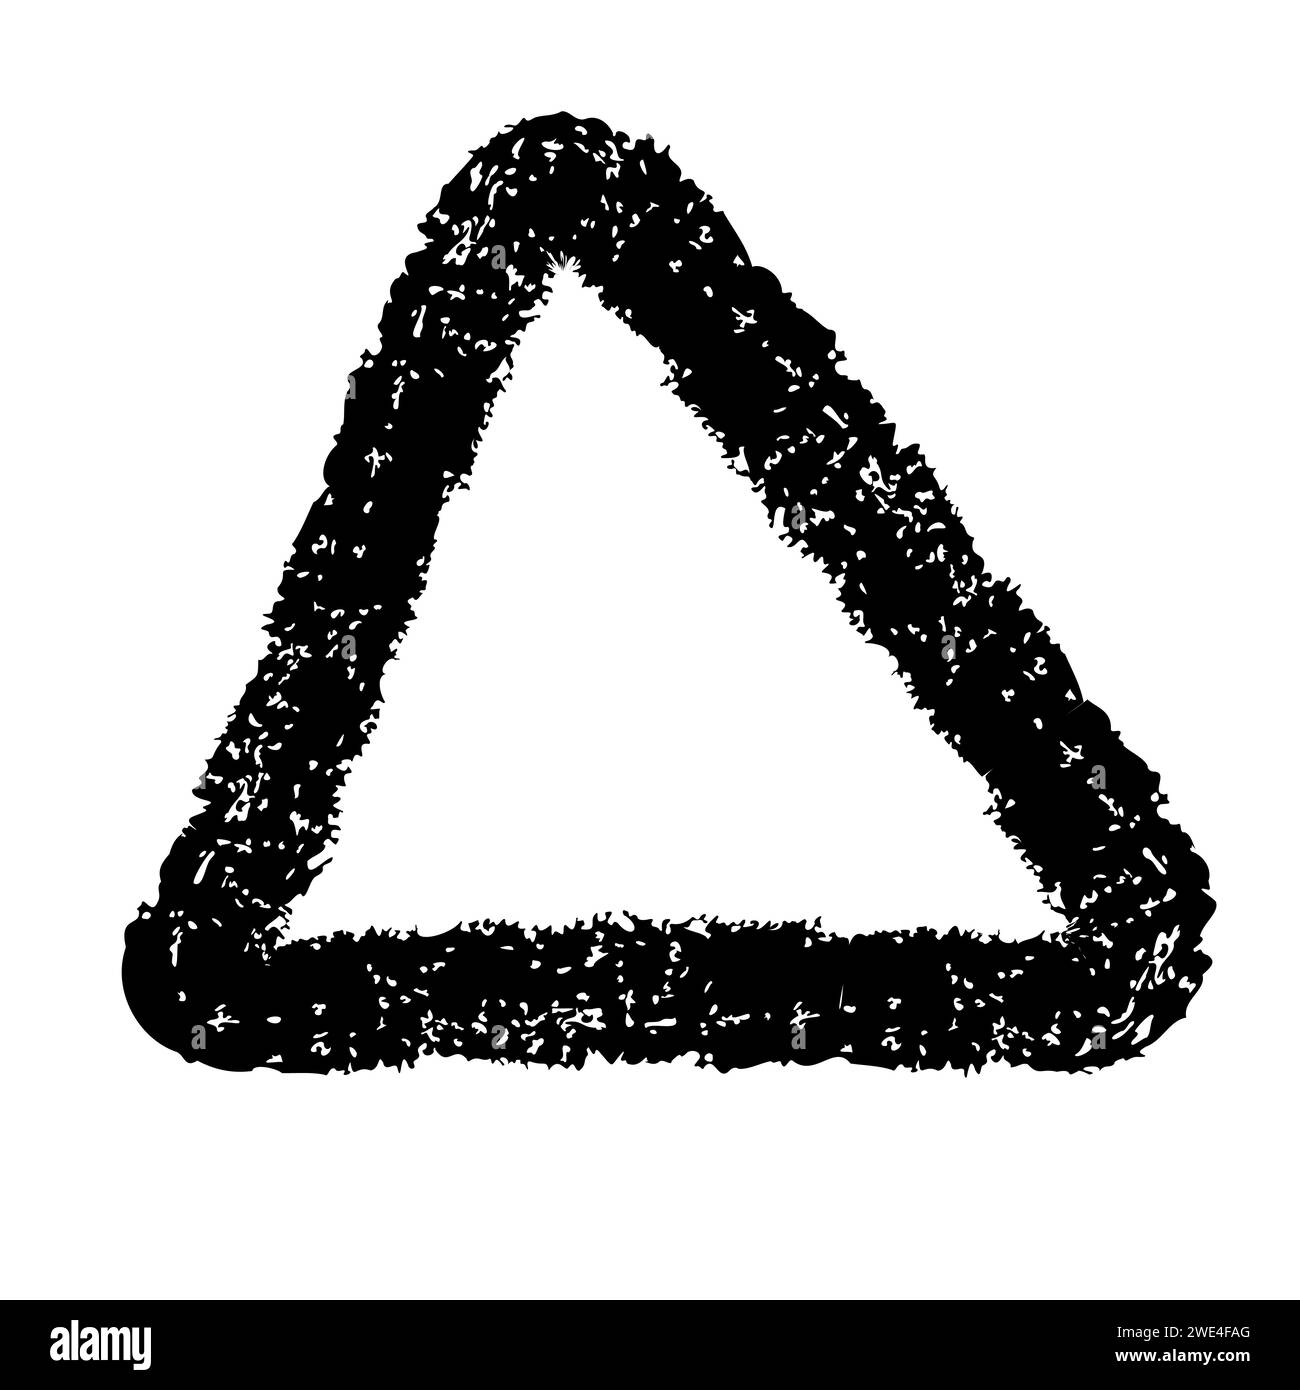 Mit dem Pinsel gezeichnetes dickes Doodle-Dreieck. Schwarzes Grunge-Banner für dein Design. Abstrakte Vorlage für gemalten Hintergrund. Tintenspritzer und künstlerisches Design Stock Vektor